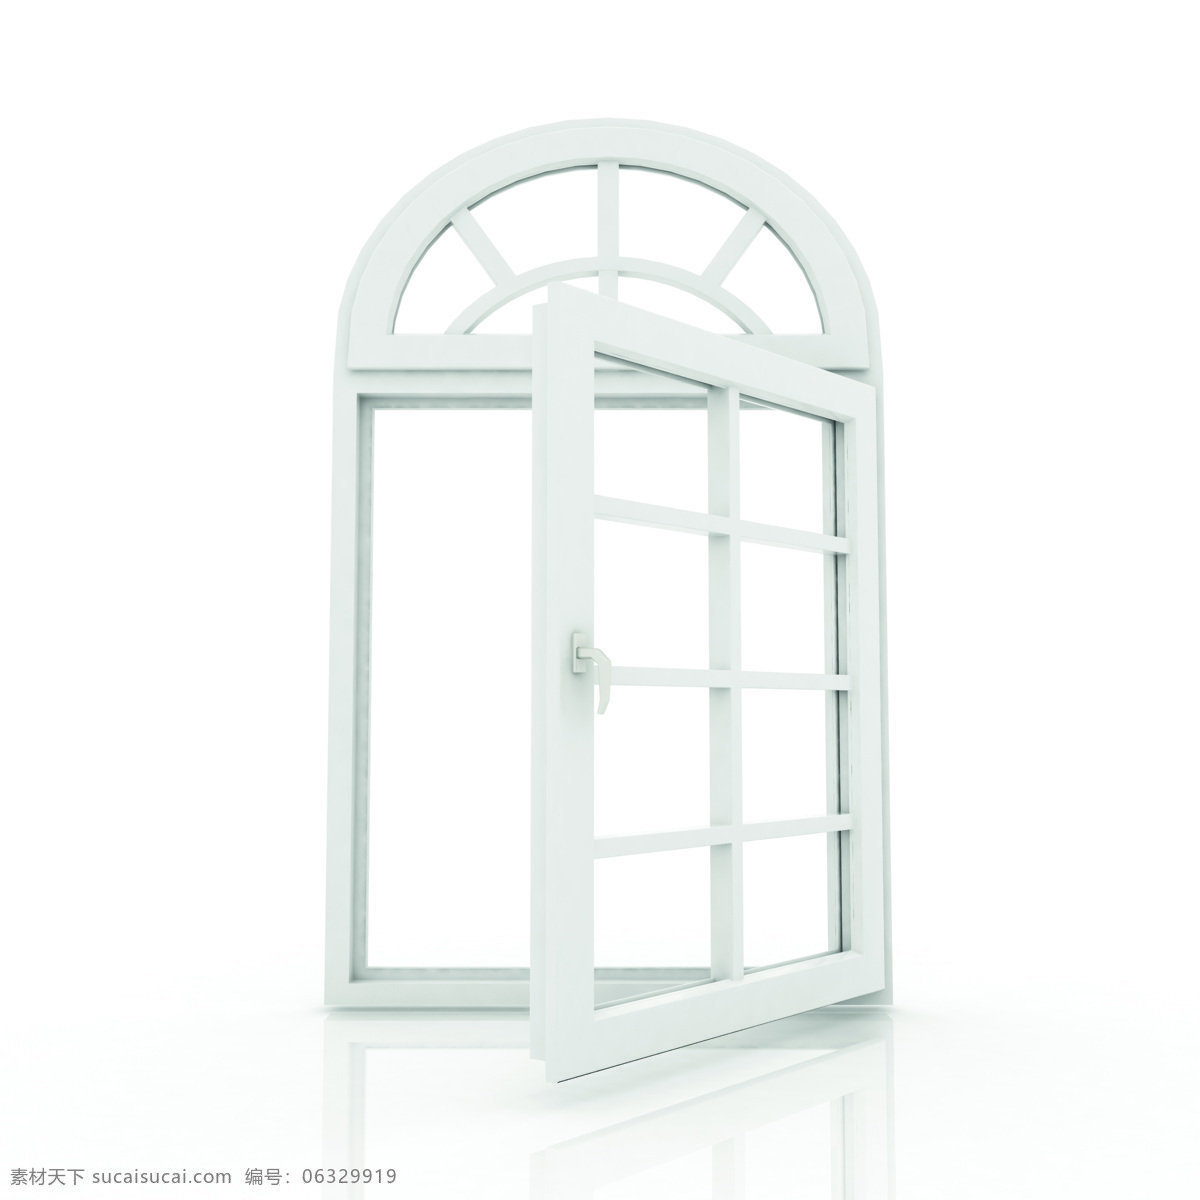 白色欧式窗户 白色 欧式 窗户 门窗 室内设计 环境家居